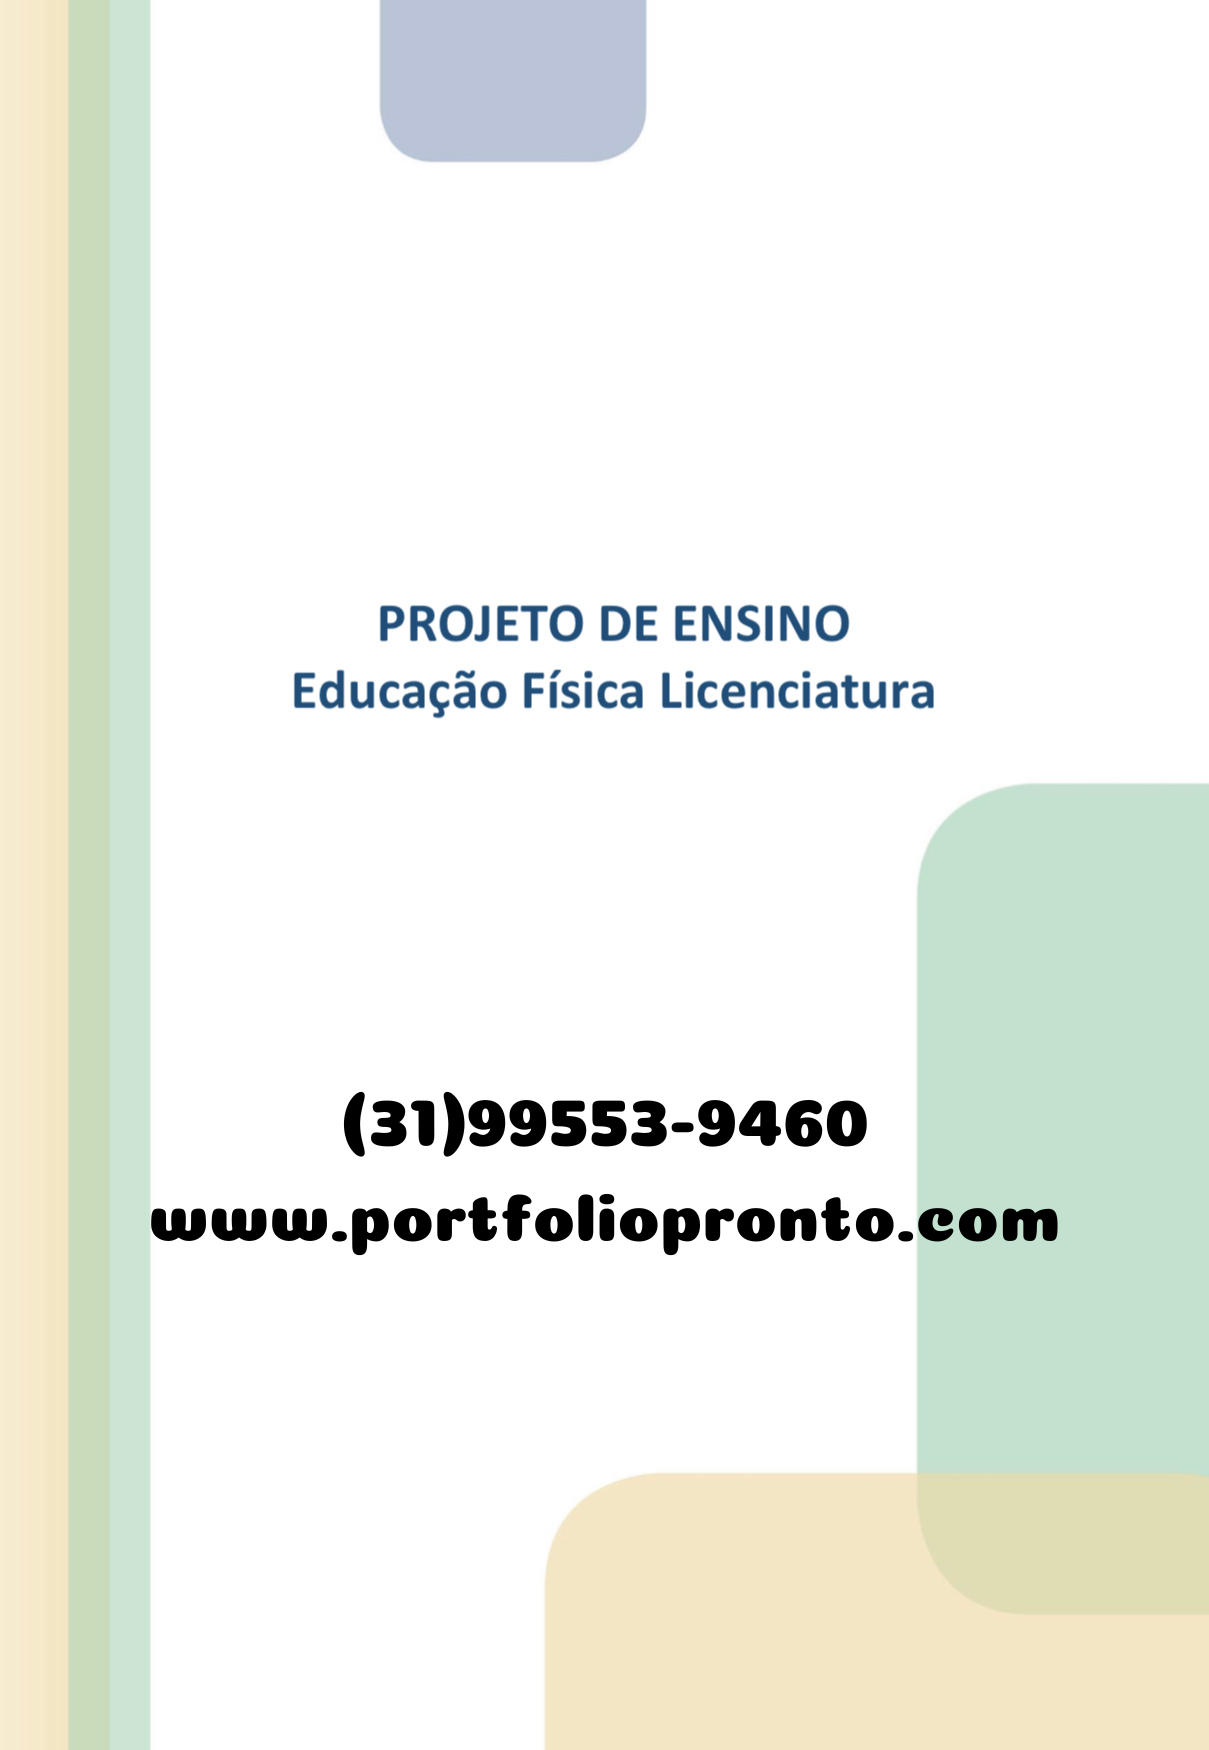 ATIVIDADE DE EDUCAÇÃO FÍSICA - 09 - HANDEBOL- TUDO SALA DE AULA